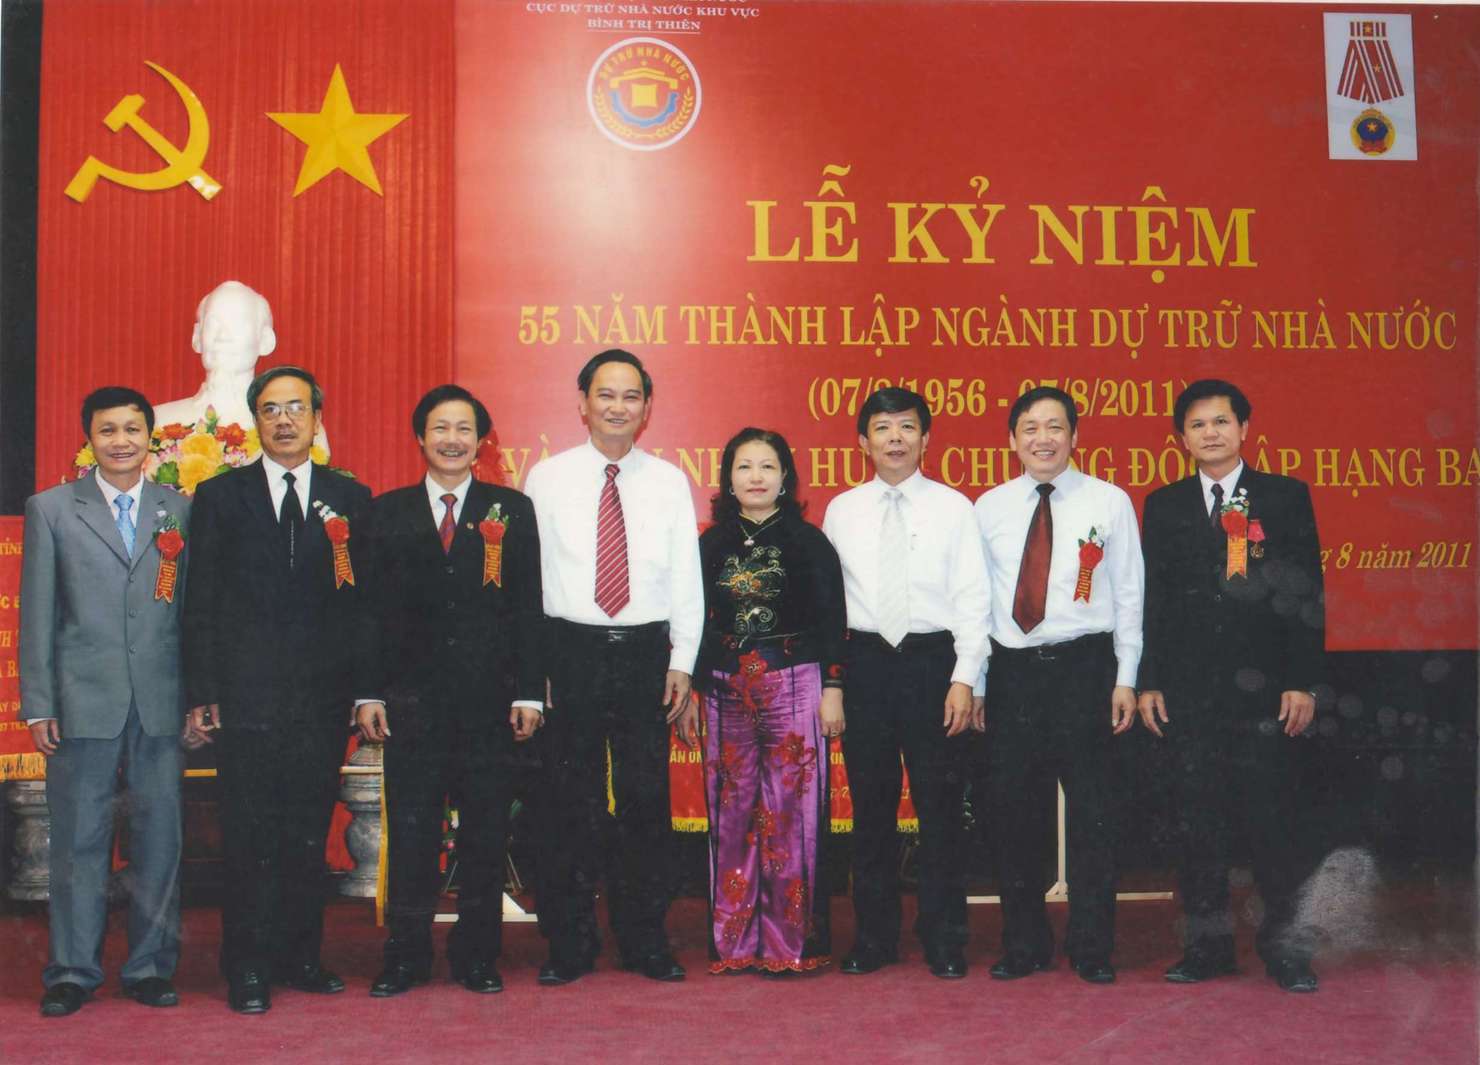 Lãnh đạo tỉnh Quảng Bình, Bộ Tài chính và Tổng cục trưởng Tổng cục DTNN chụp ảnh lưu niệm với ban lãnh đạo Cục DTNN khu vực Bình Trị Thiên nhân kỷ niệm 55 năm thành lập ngành DTNN và Cục đón nhận Huân chương Độc lập hạng Ba năm 2011.